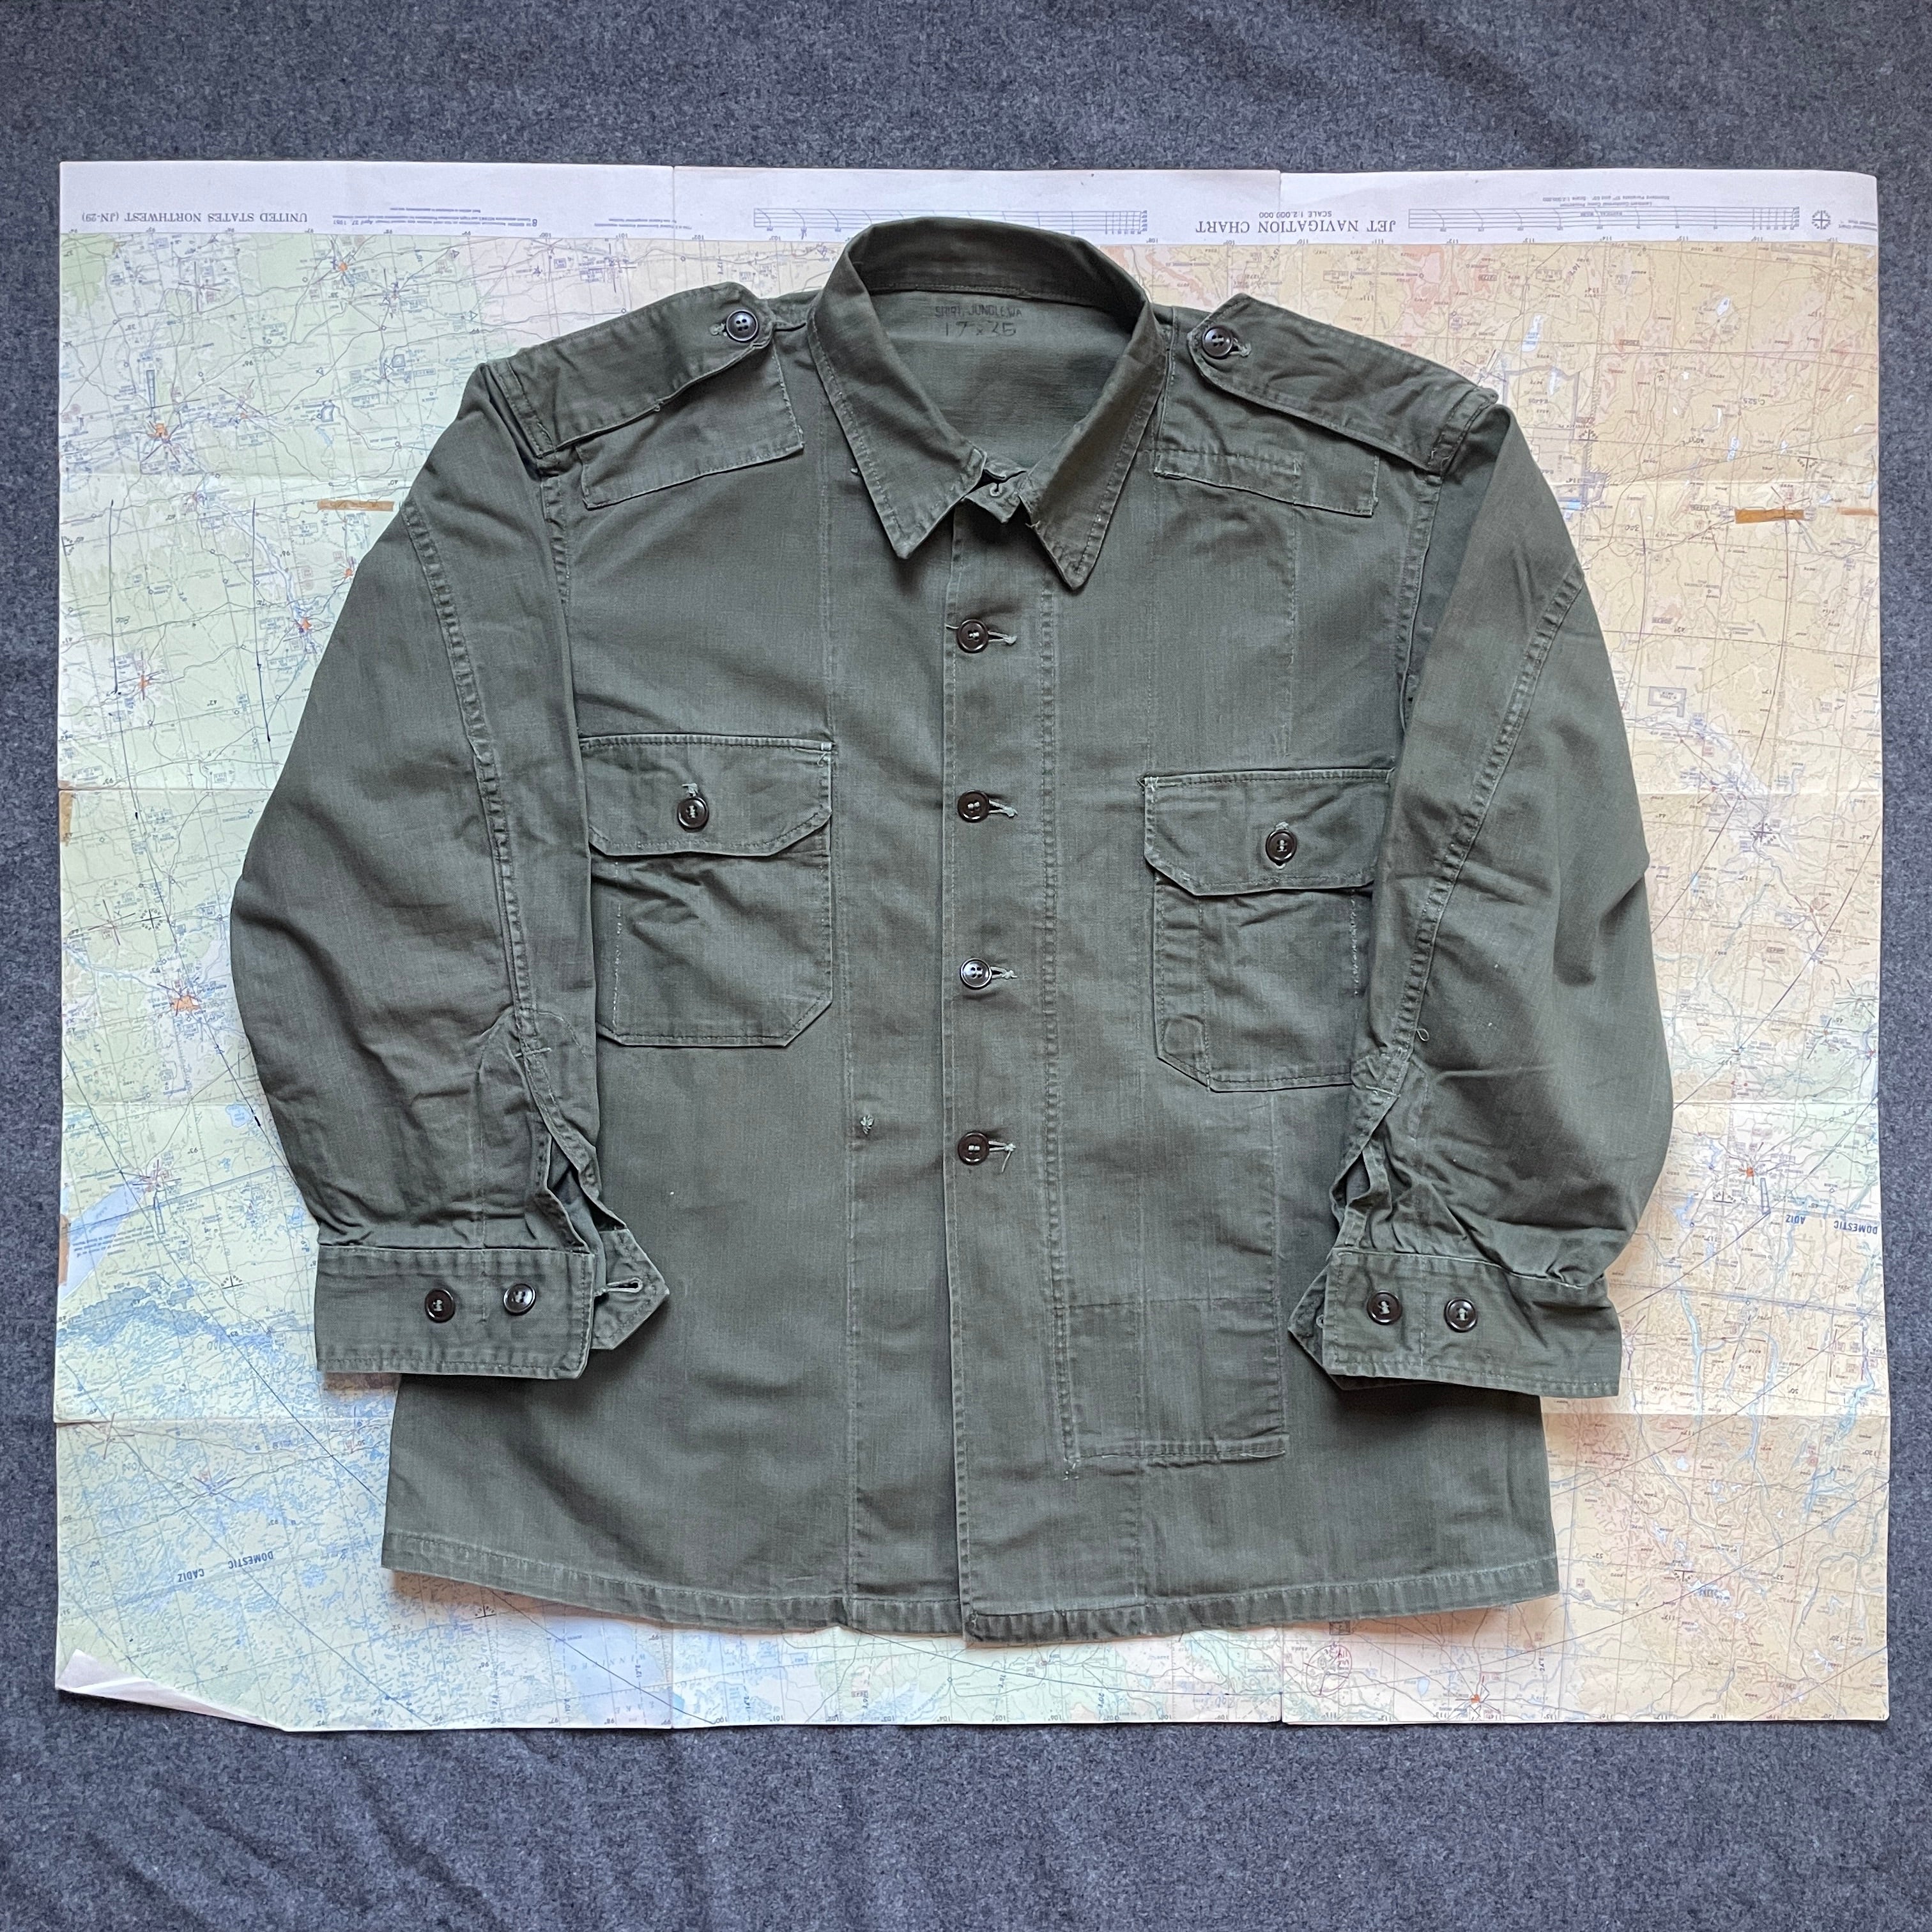 British Amy 1945 War Aid HBT Shirt – The Major's Tailor